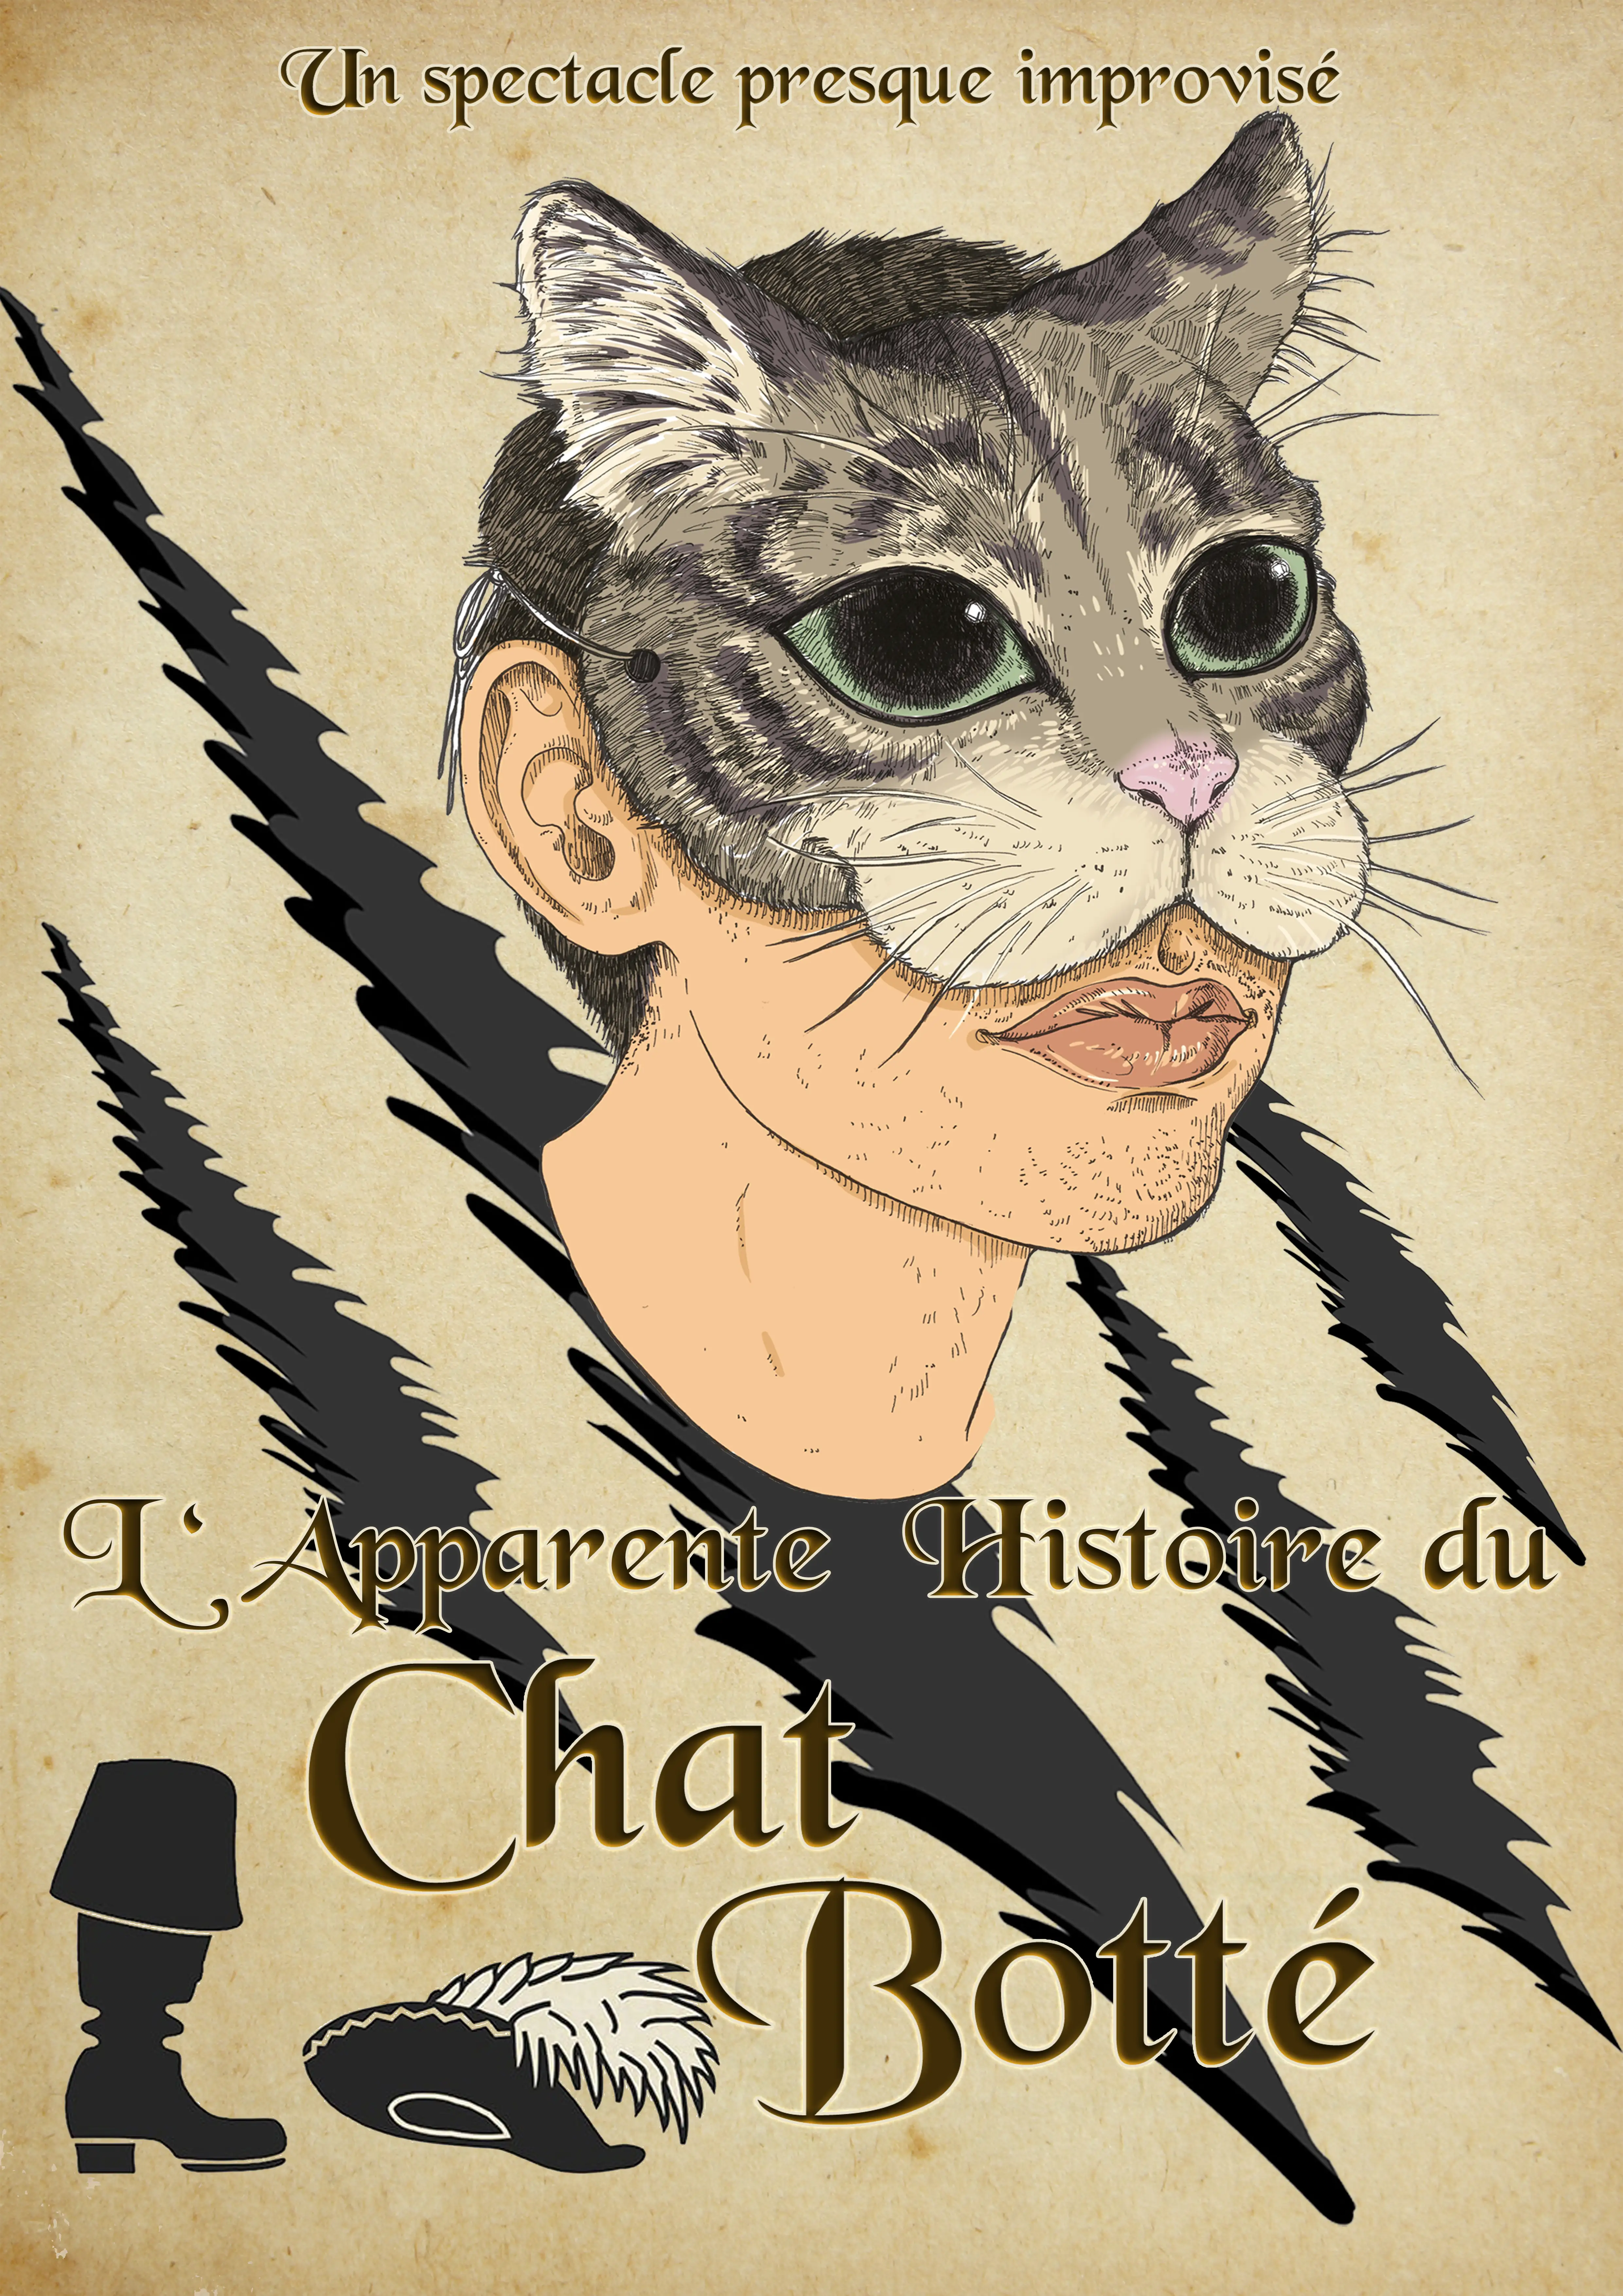 Claude Gérard Production présente l'apparent histoire du Chat botté